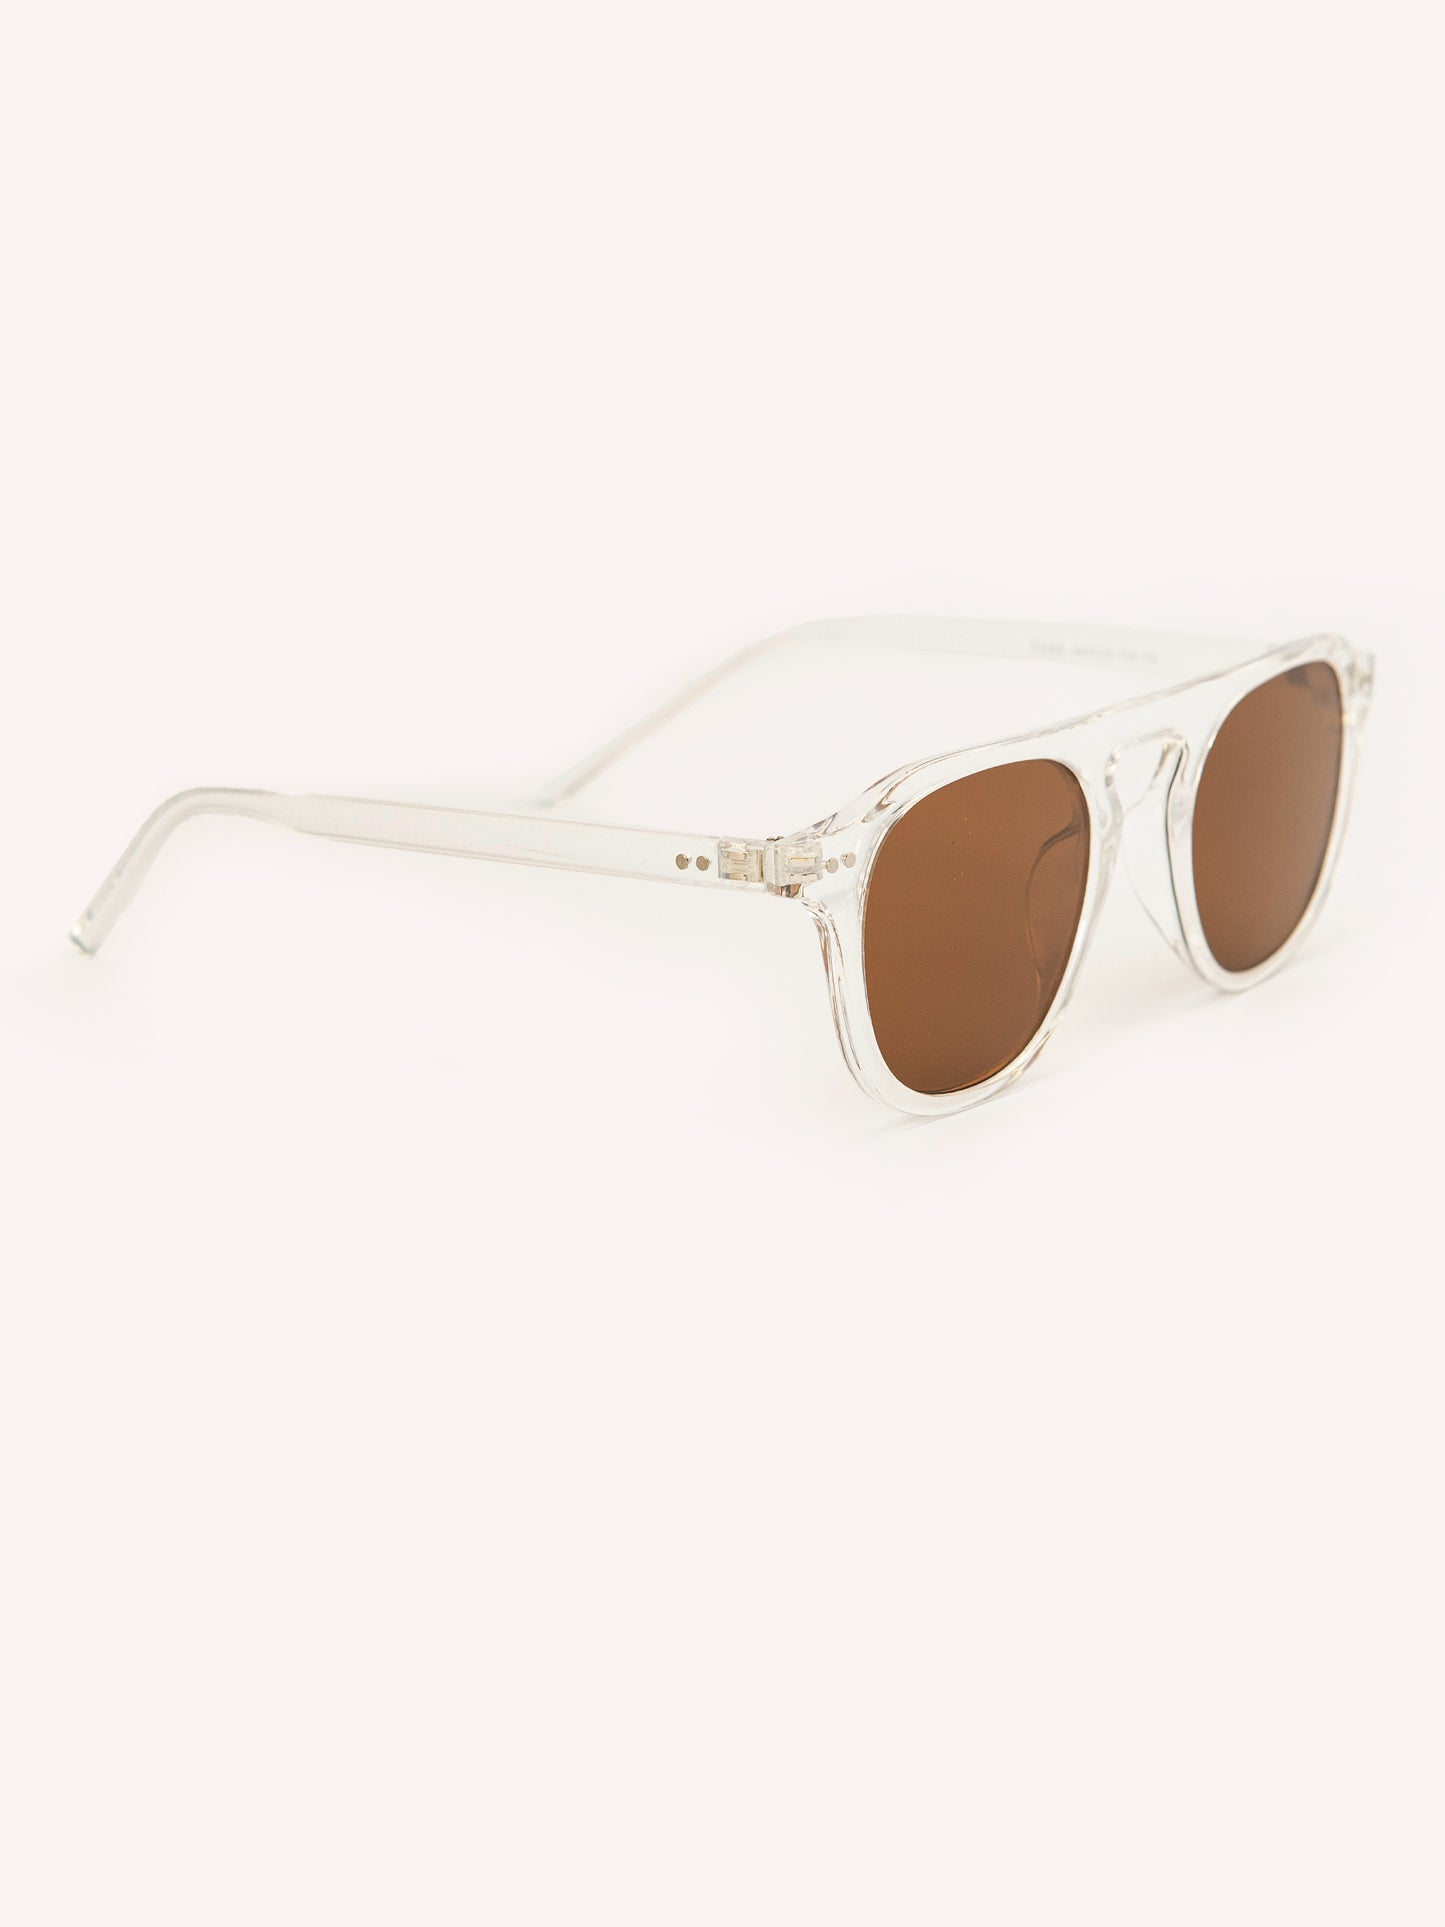 Wayfare Sunglasses